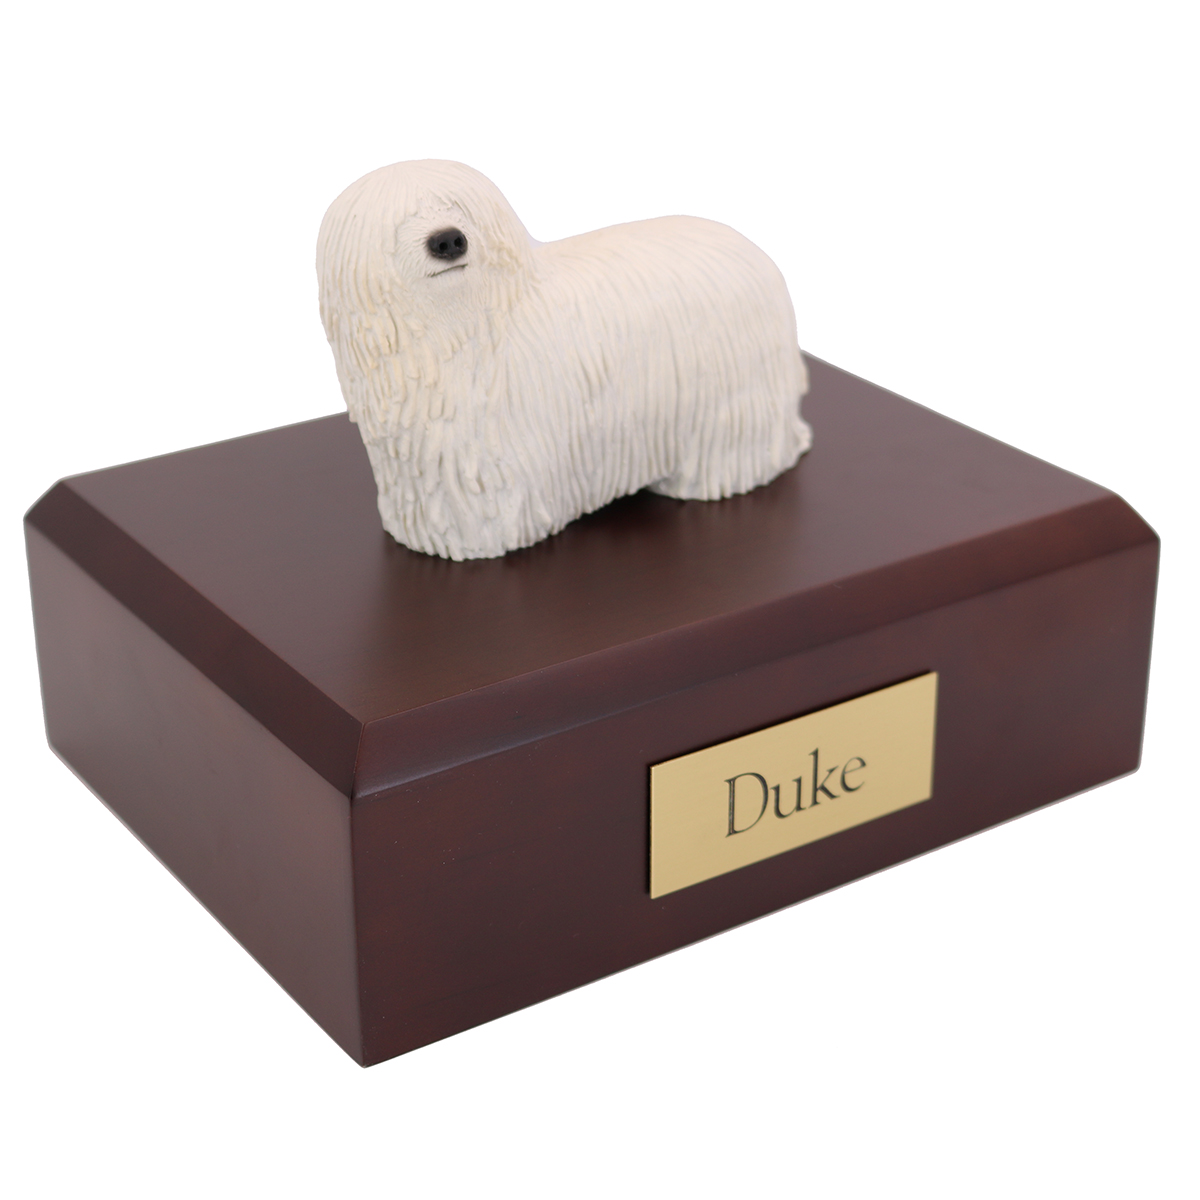 Dog, Komondor - Figurine Urn